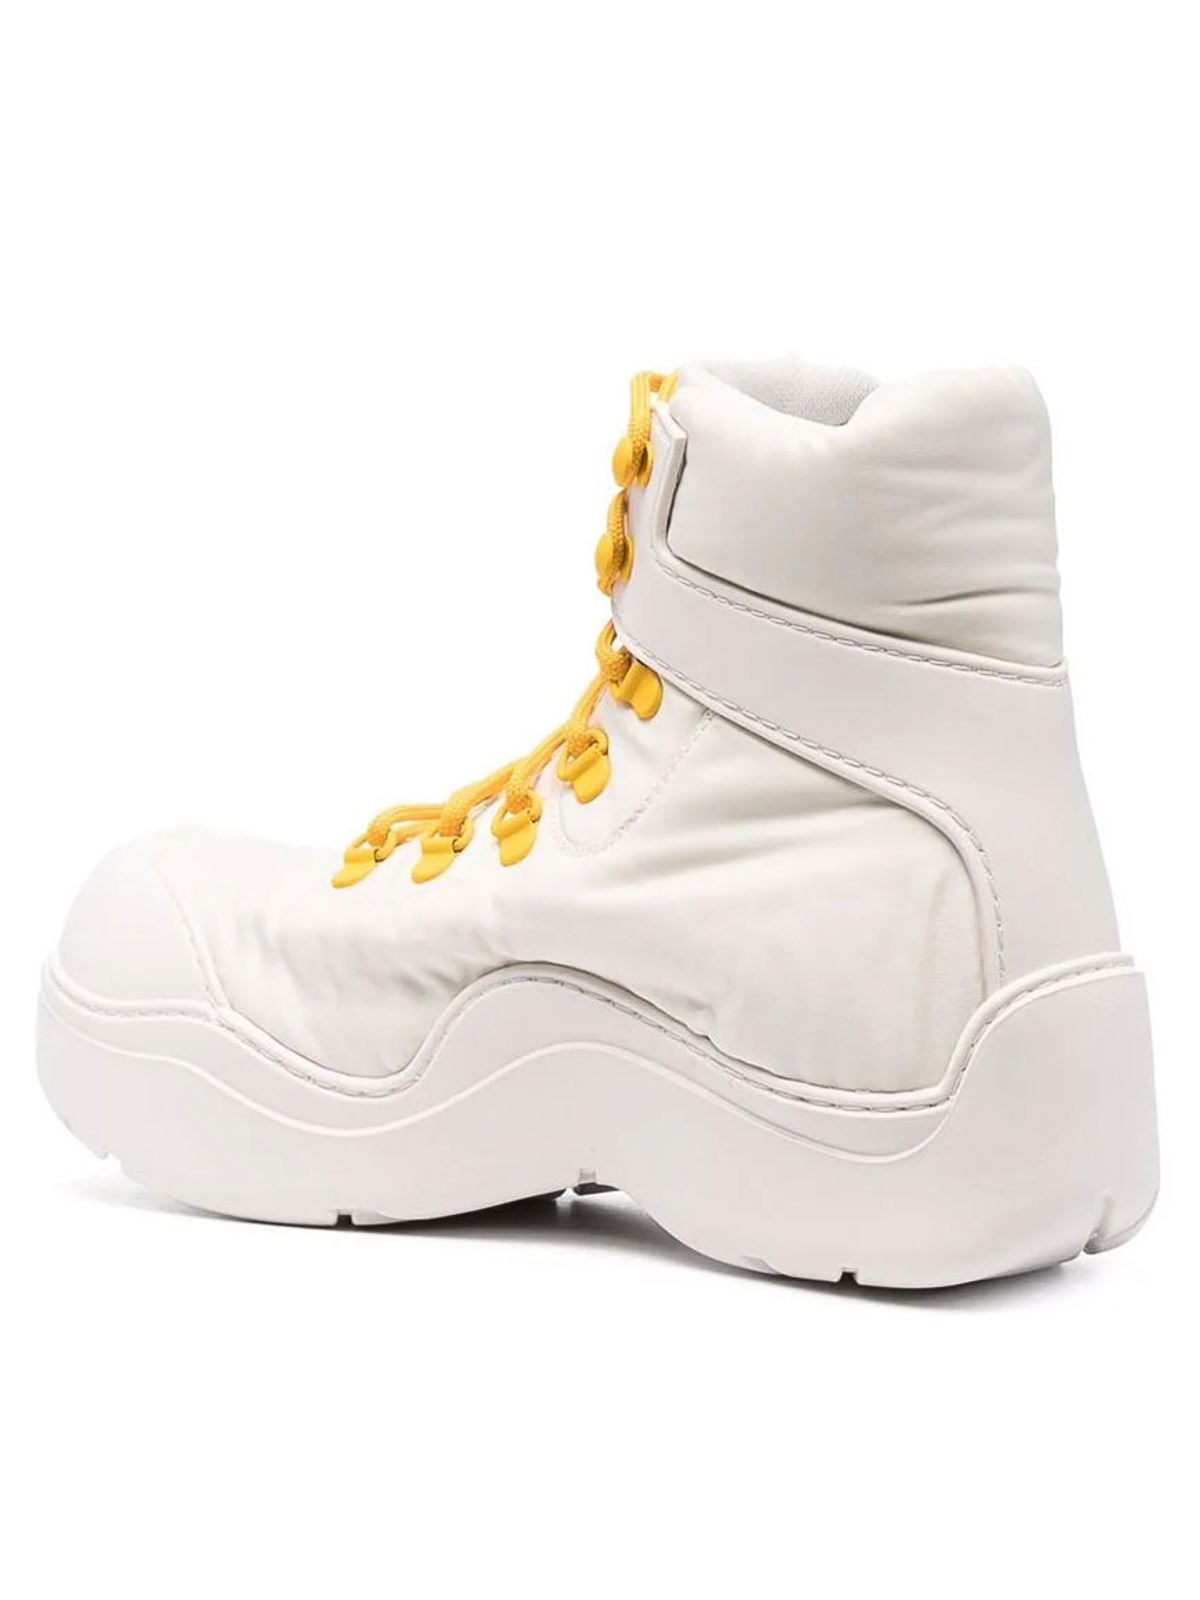 Boots Bottega Veneta - Boots - 667218VBSD72942 | Shop online at iKRIX